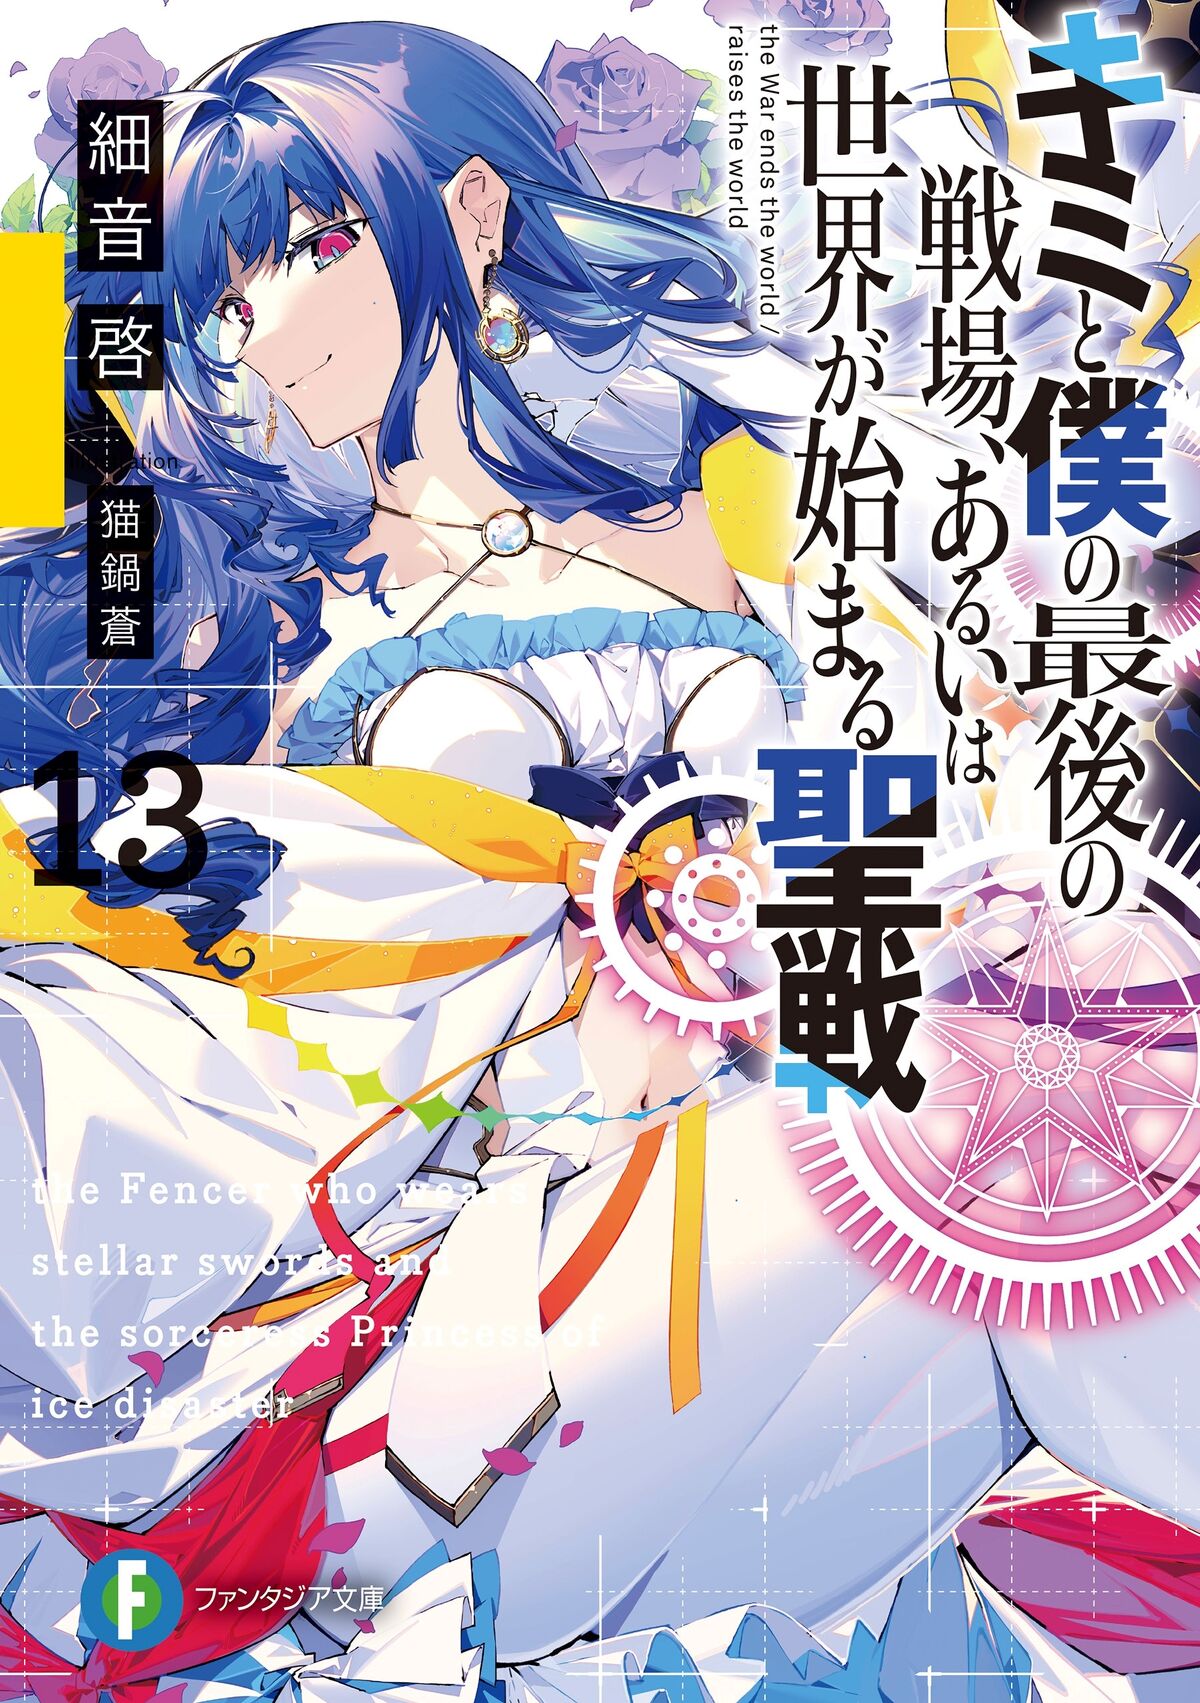 Light Novel Volume 8, KimiSen Wiki